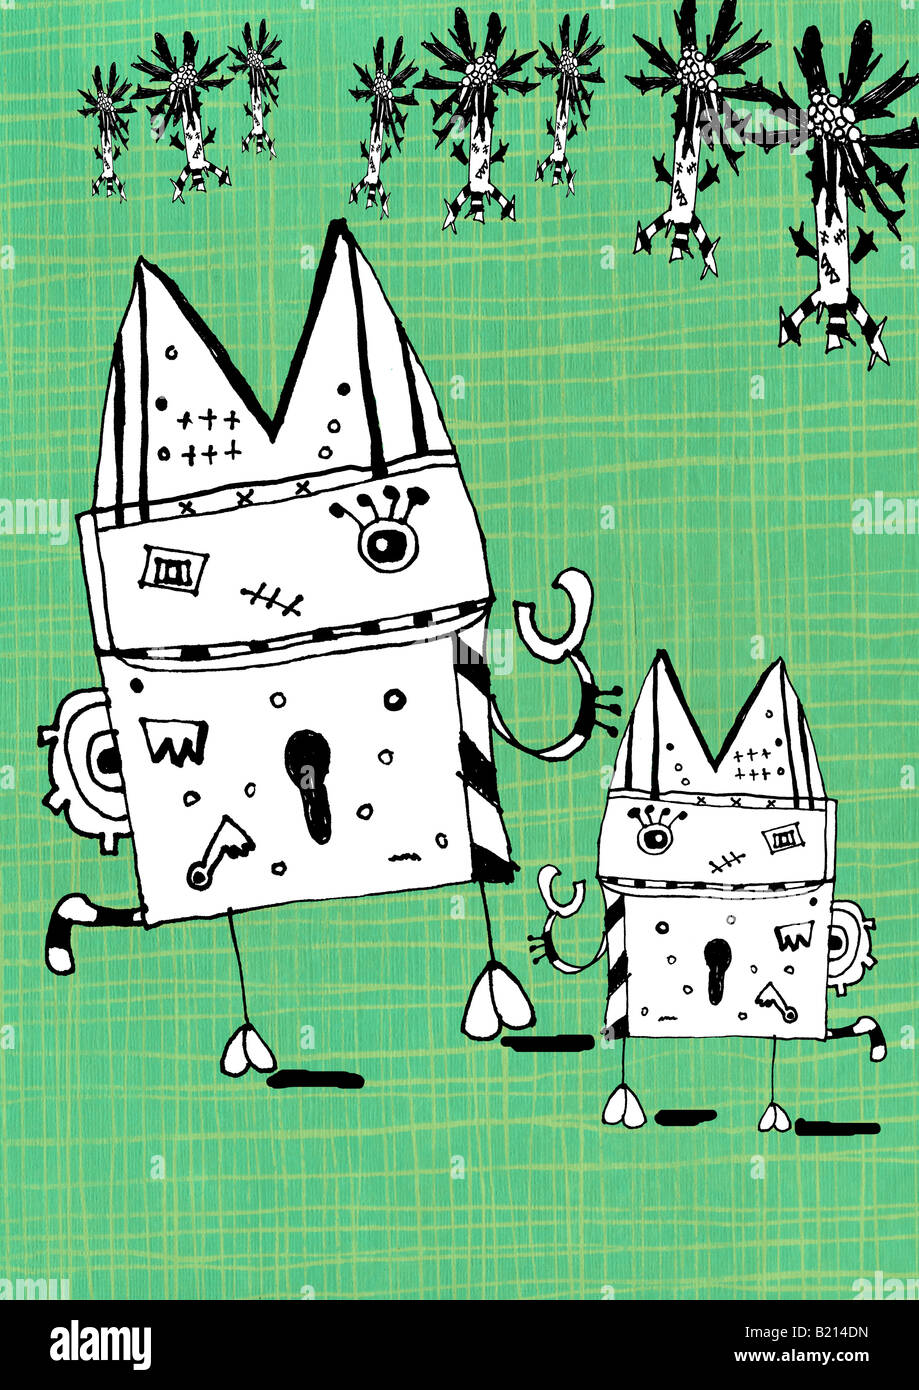 Illustration de style de jeu monster/robot créatures. Banque D'Images